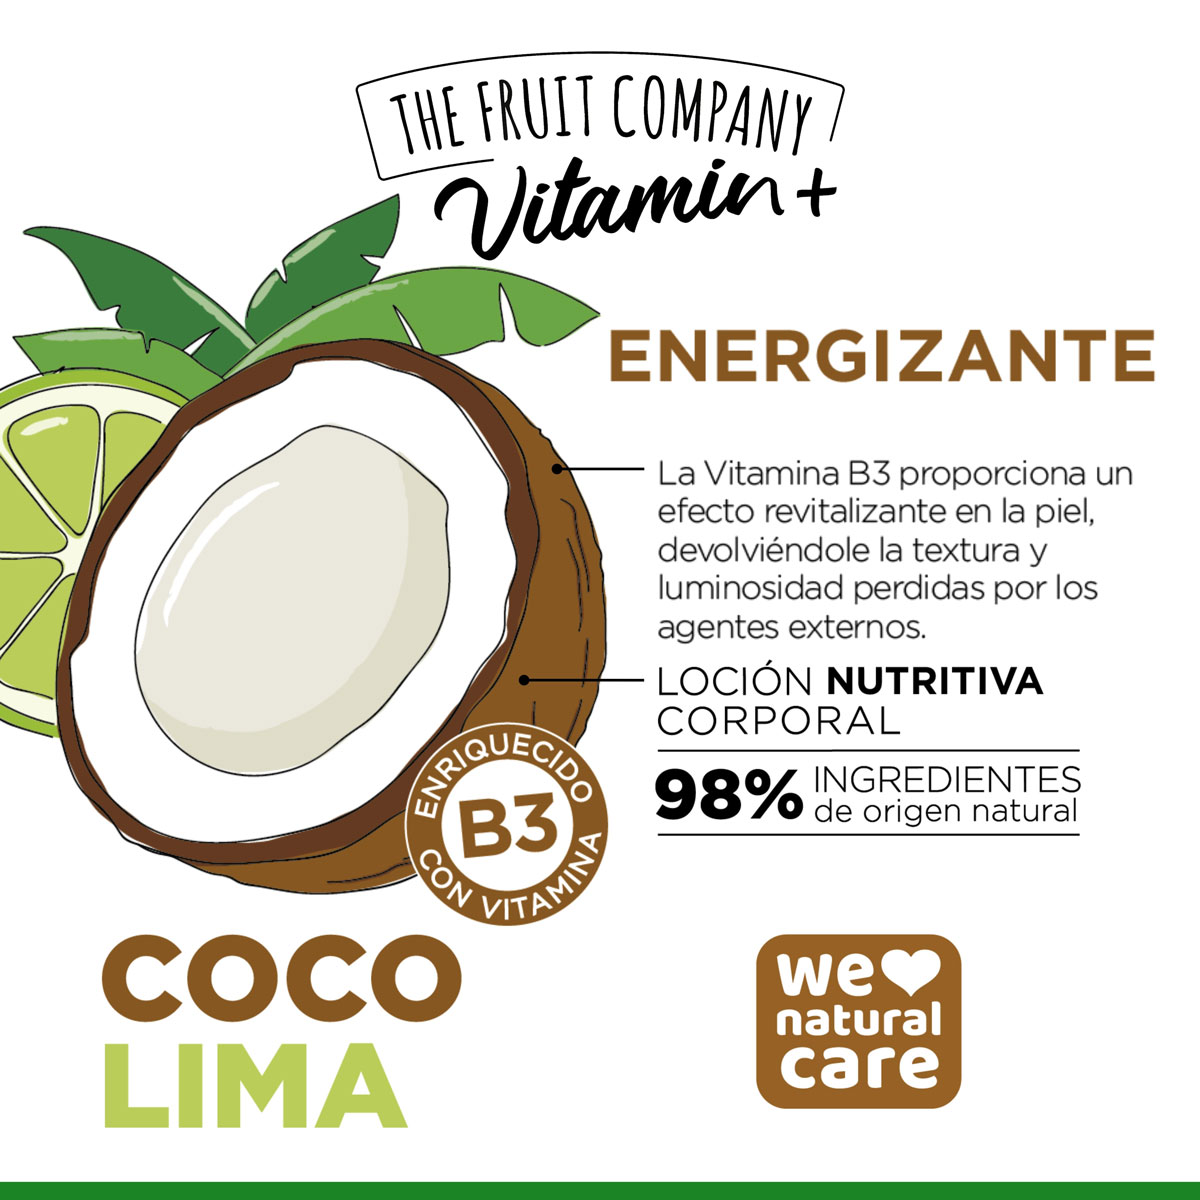 Comprar The Fruit Company - Vela perfumada - Coco